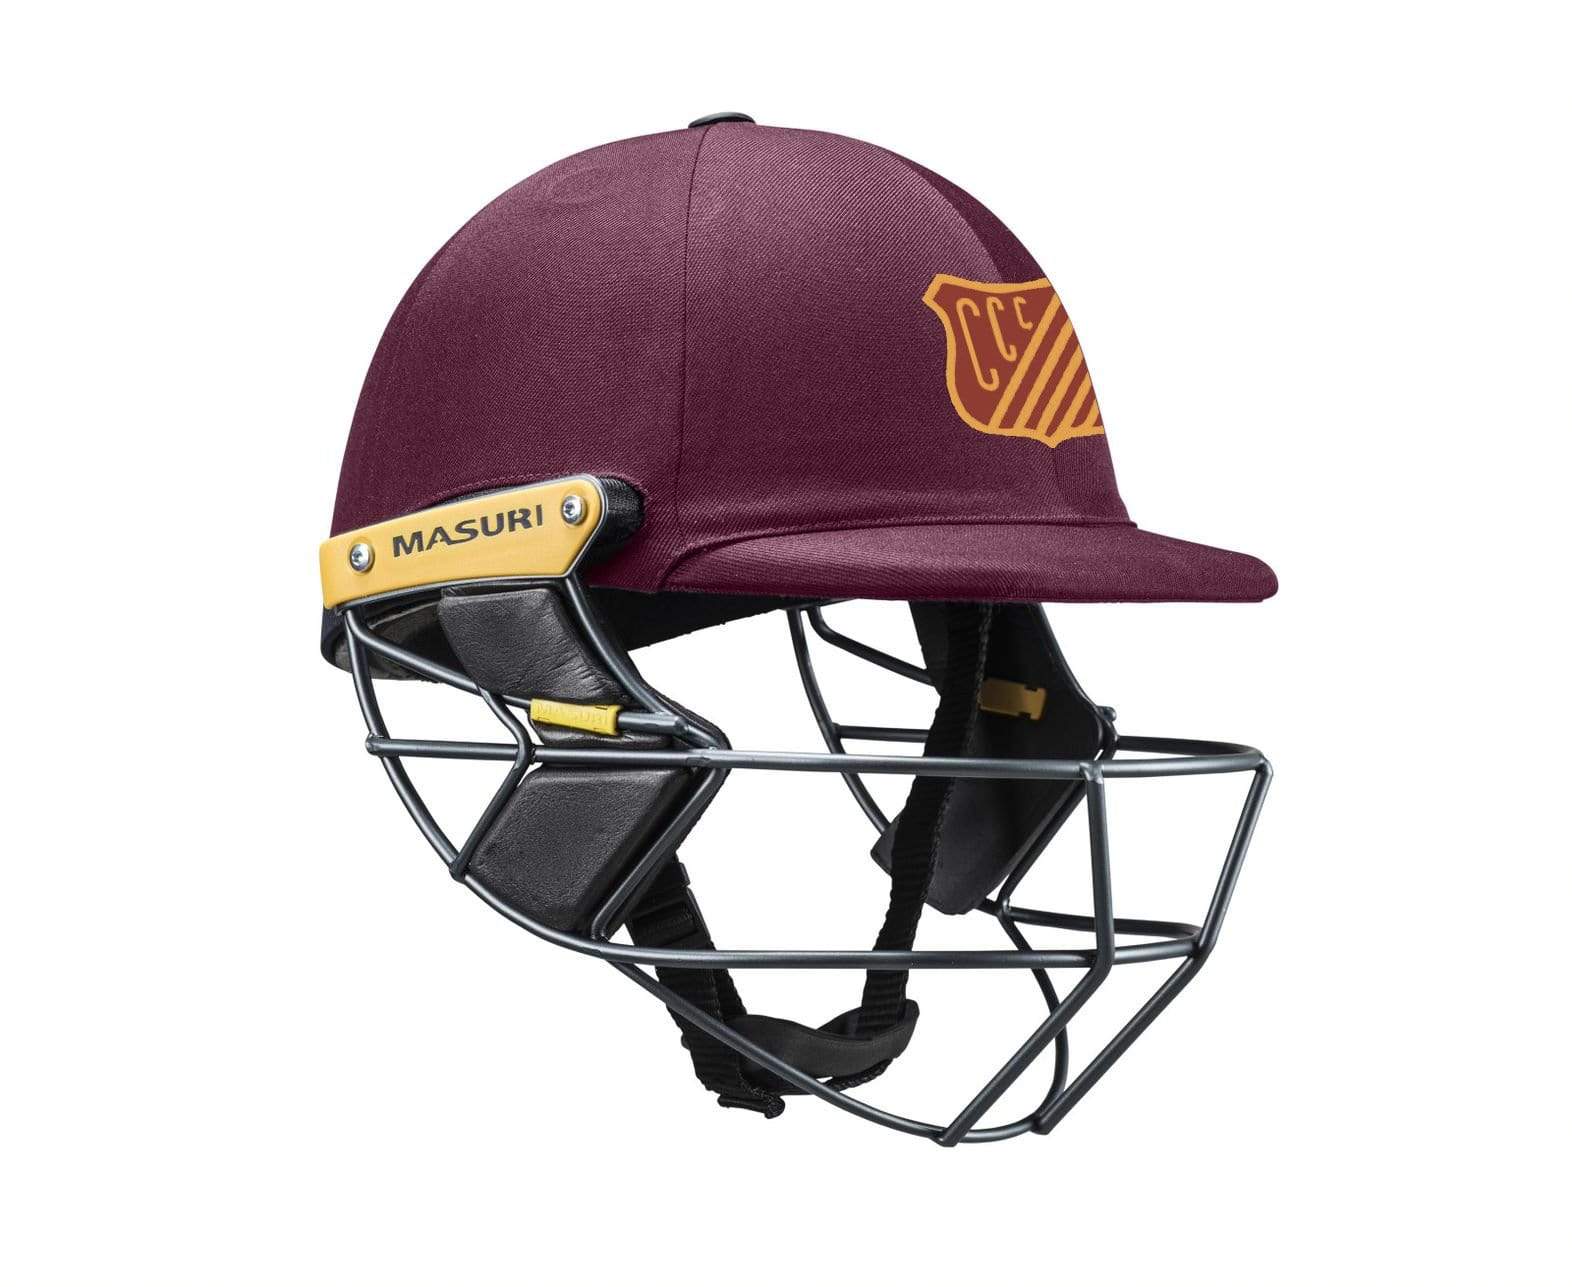 Masuri Club Helmet Coburg Cricket Club Helmet